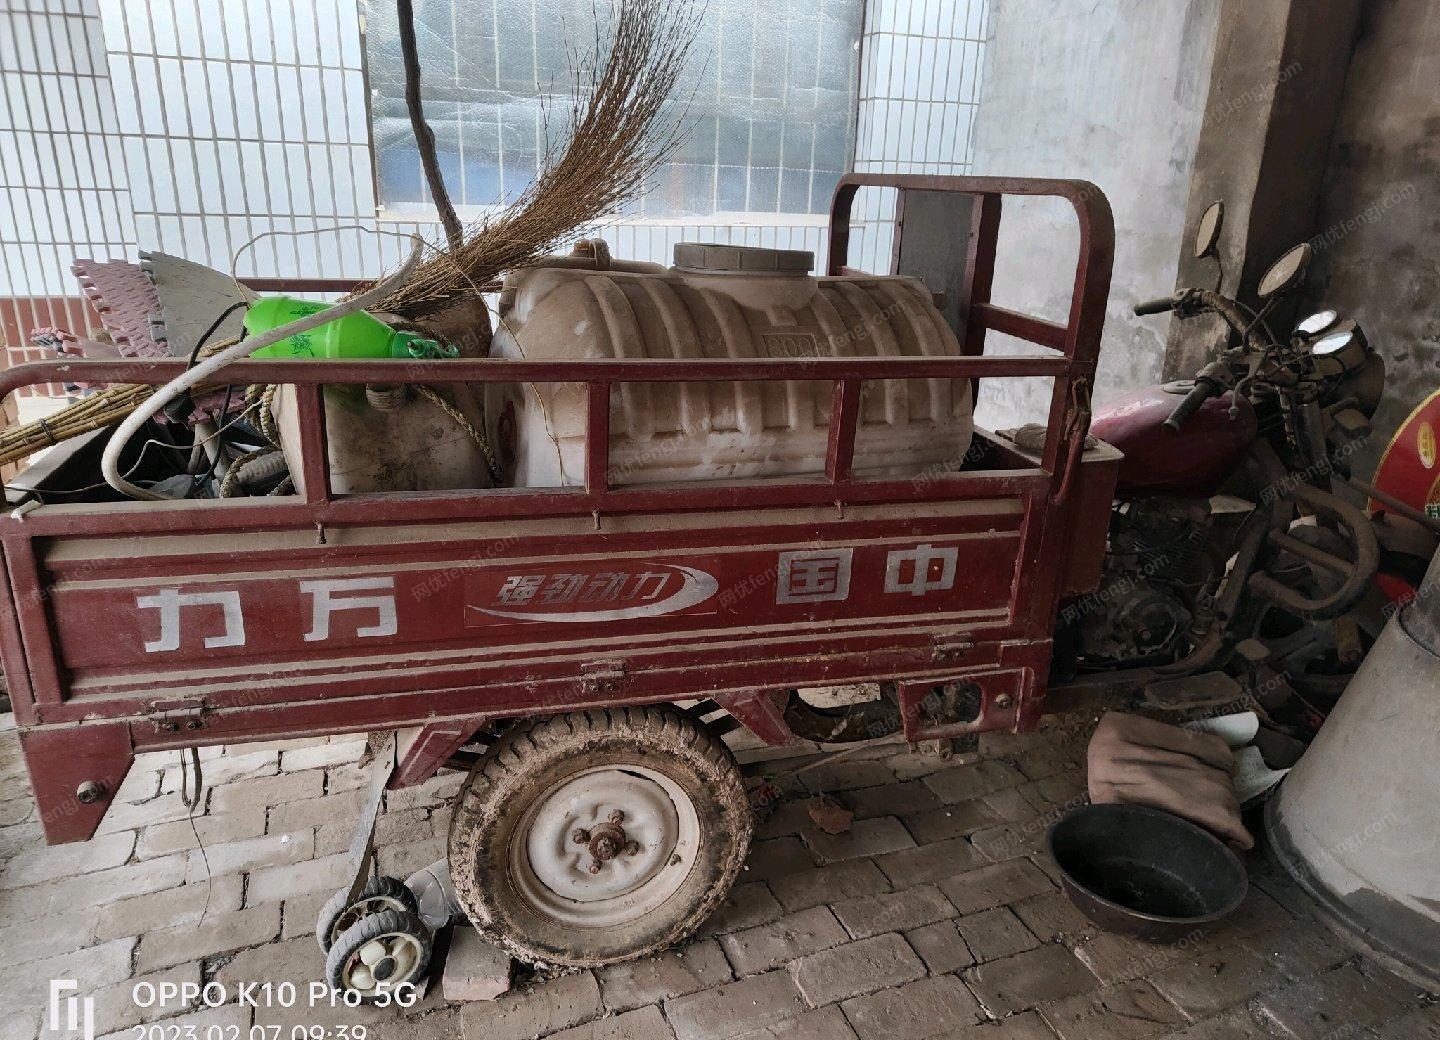 河北邯郸转让三轮车，没跑过远路，在家放了两年，有点尘土，车框良好。一口价，自提。